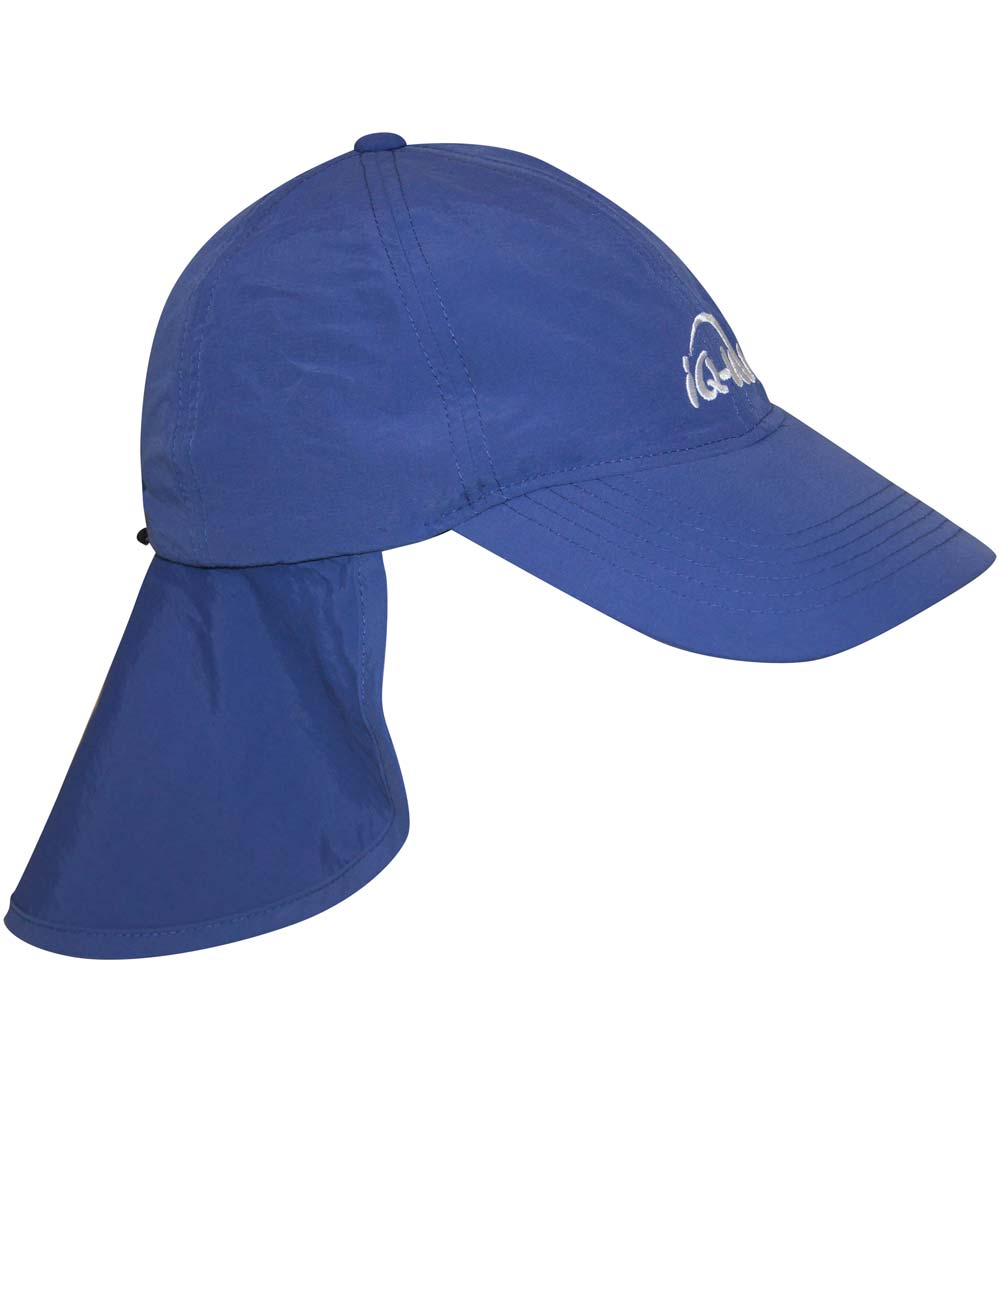 Schutz Logo Kappe mit Nackenschutz recycelt blau side